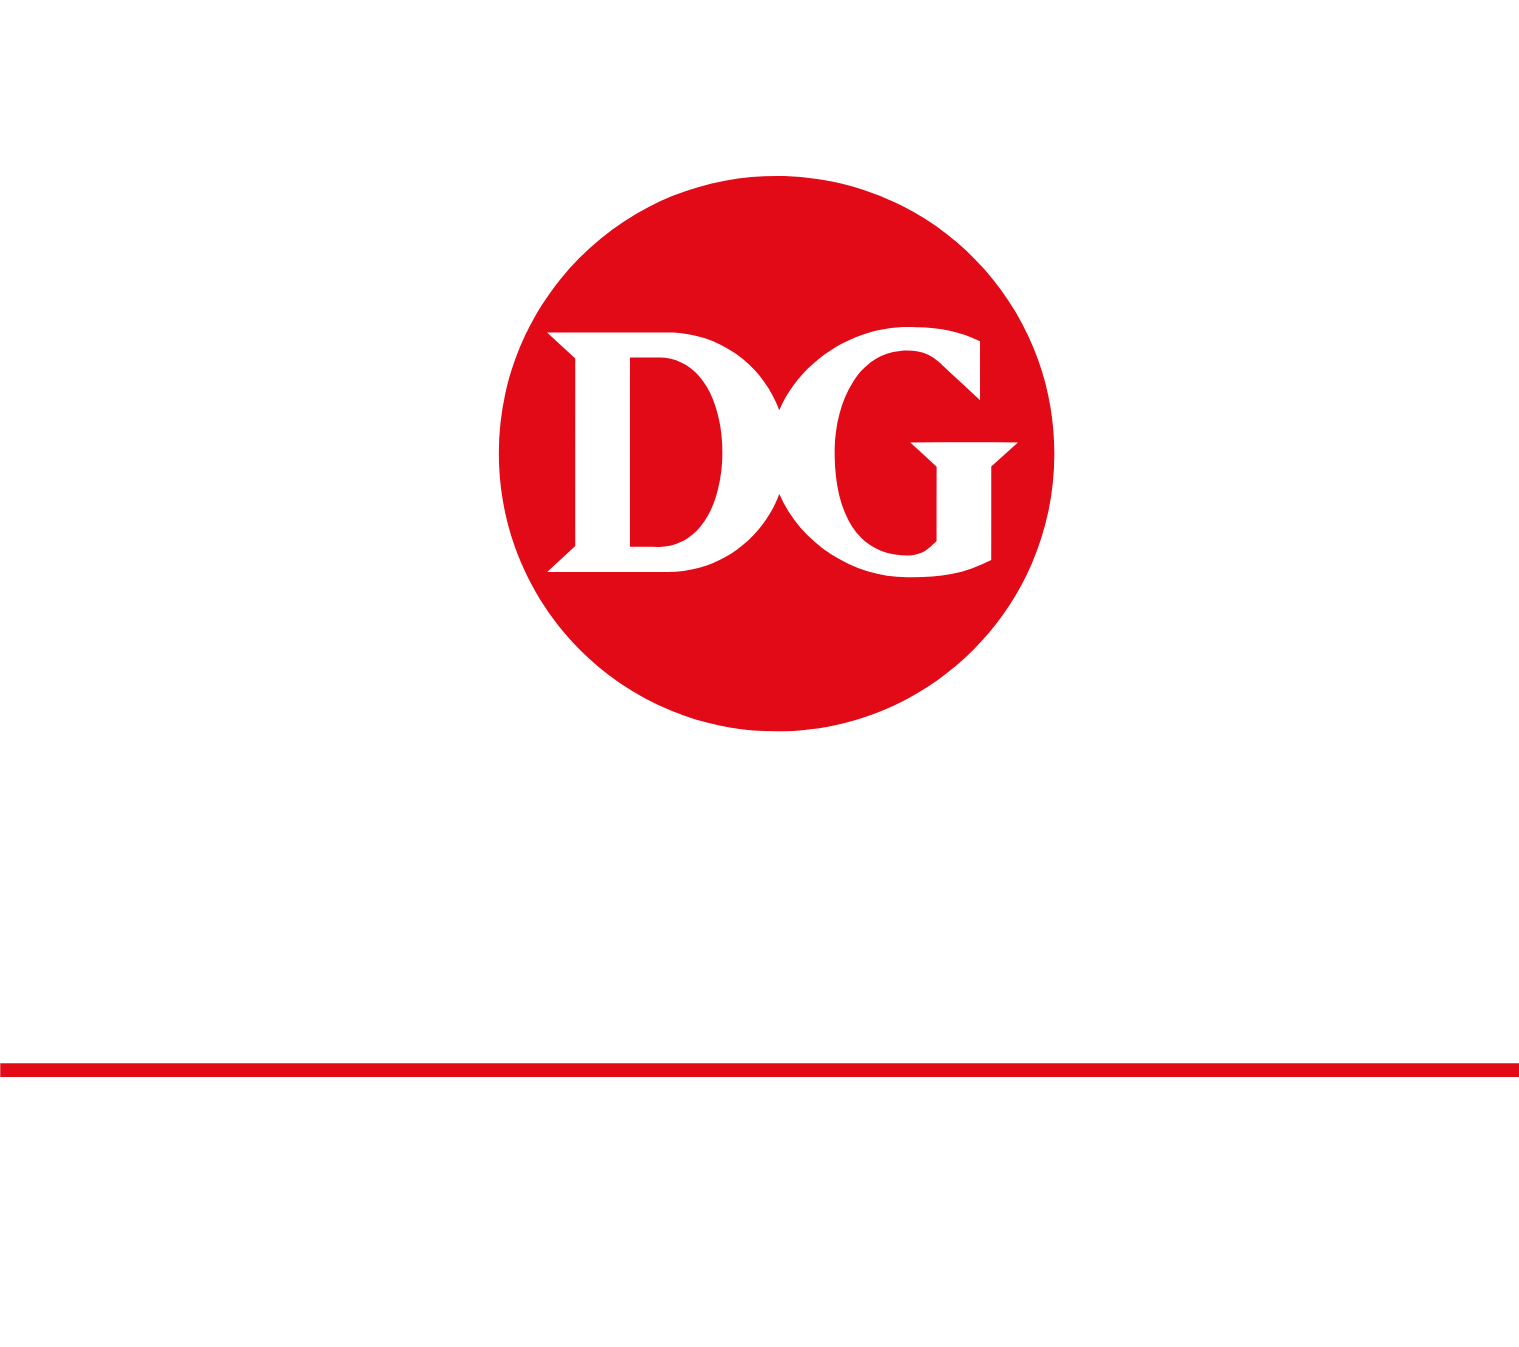 Delek Group logo large for dark backgrounds (transparent PNG)